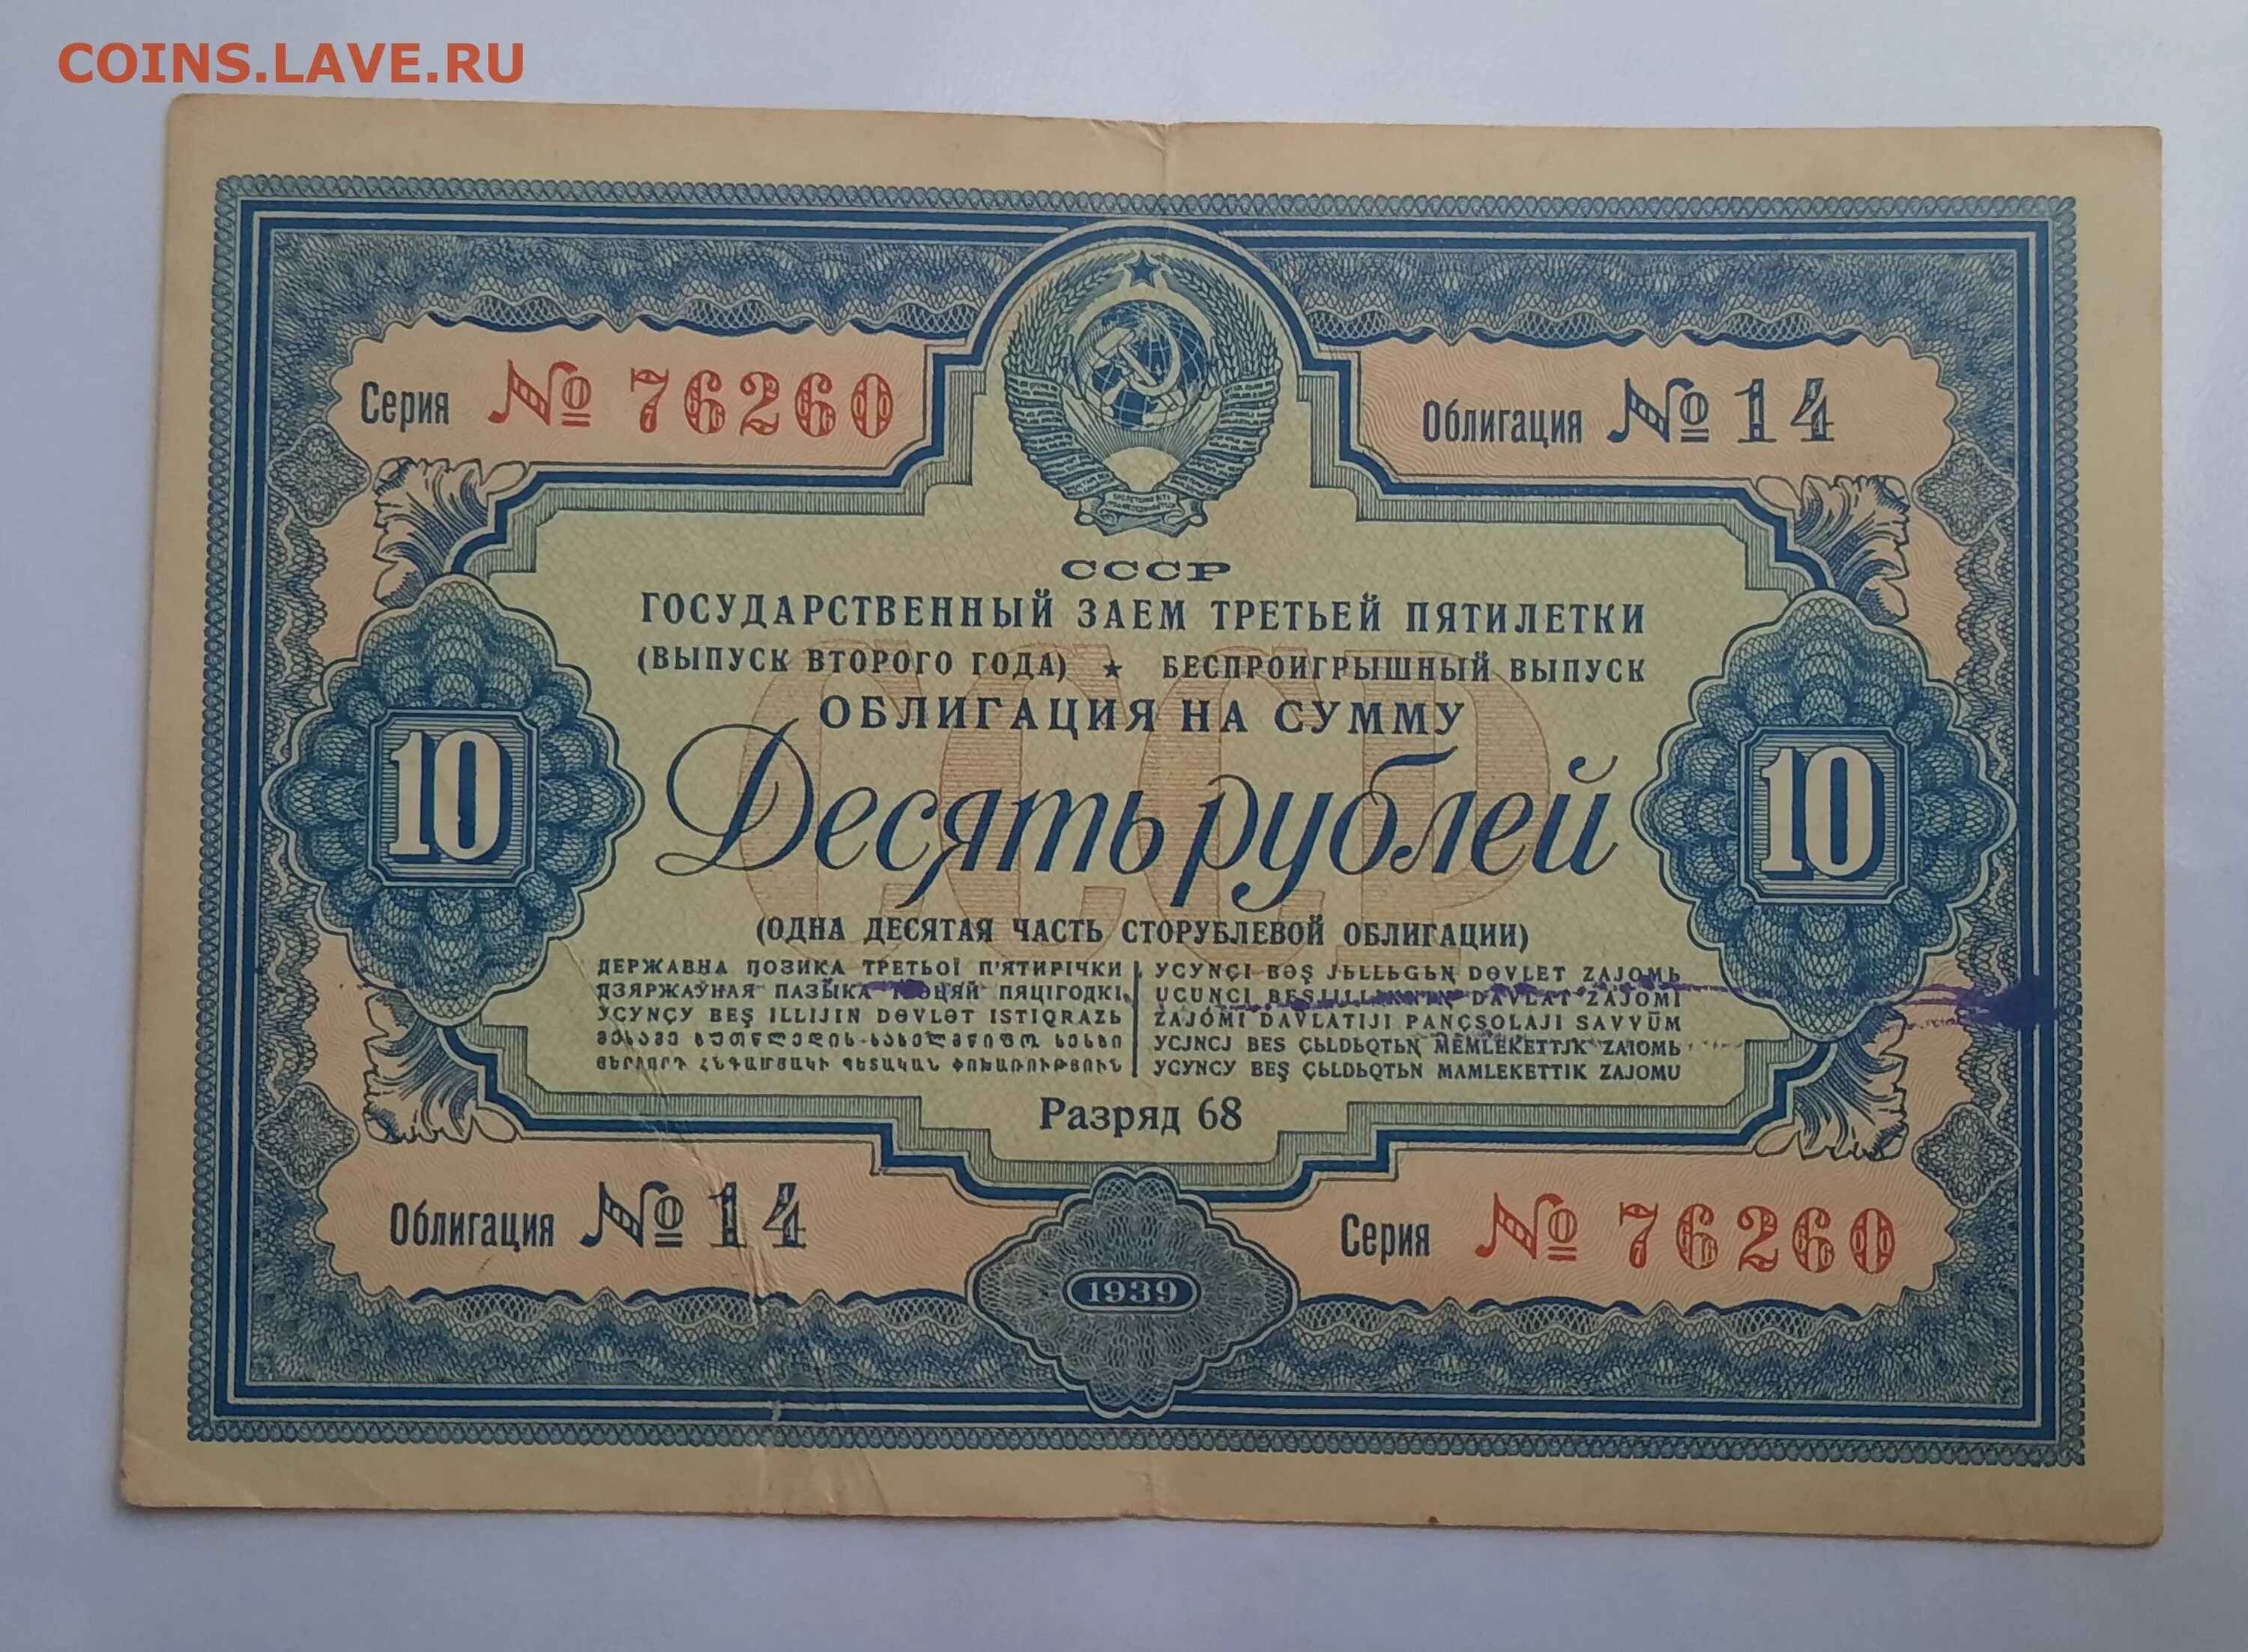 5 рублей облигация. Облигация. 100 Рублей 1939. Bonds облигации. Государственный займ СССР.